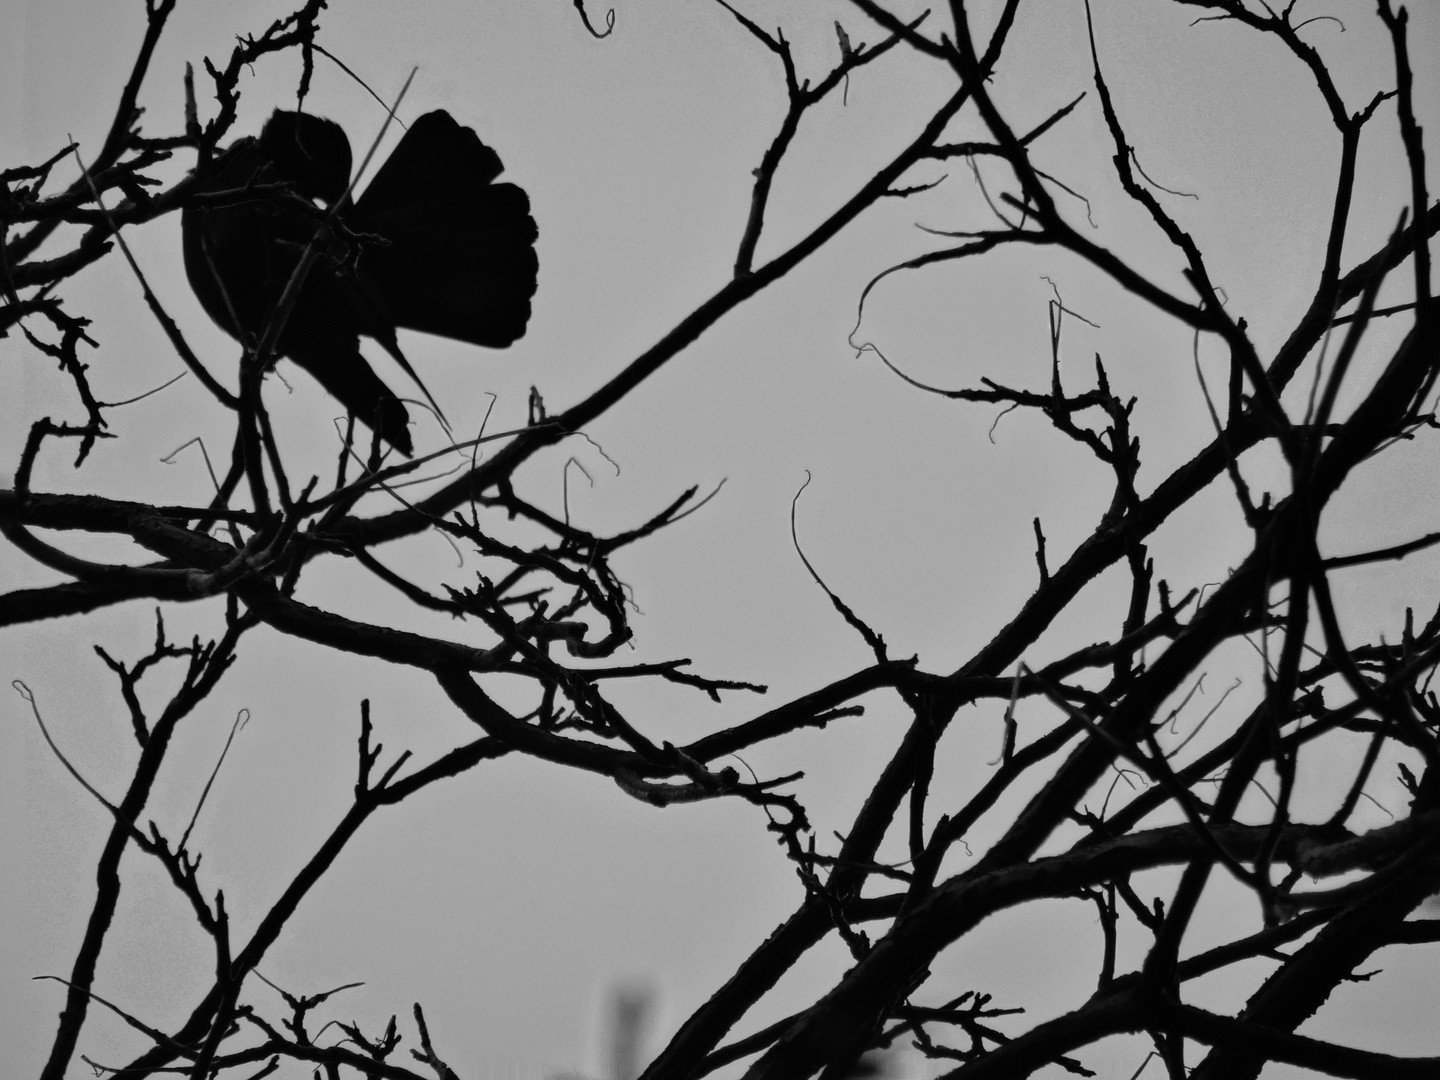 Oiseau entre branches